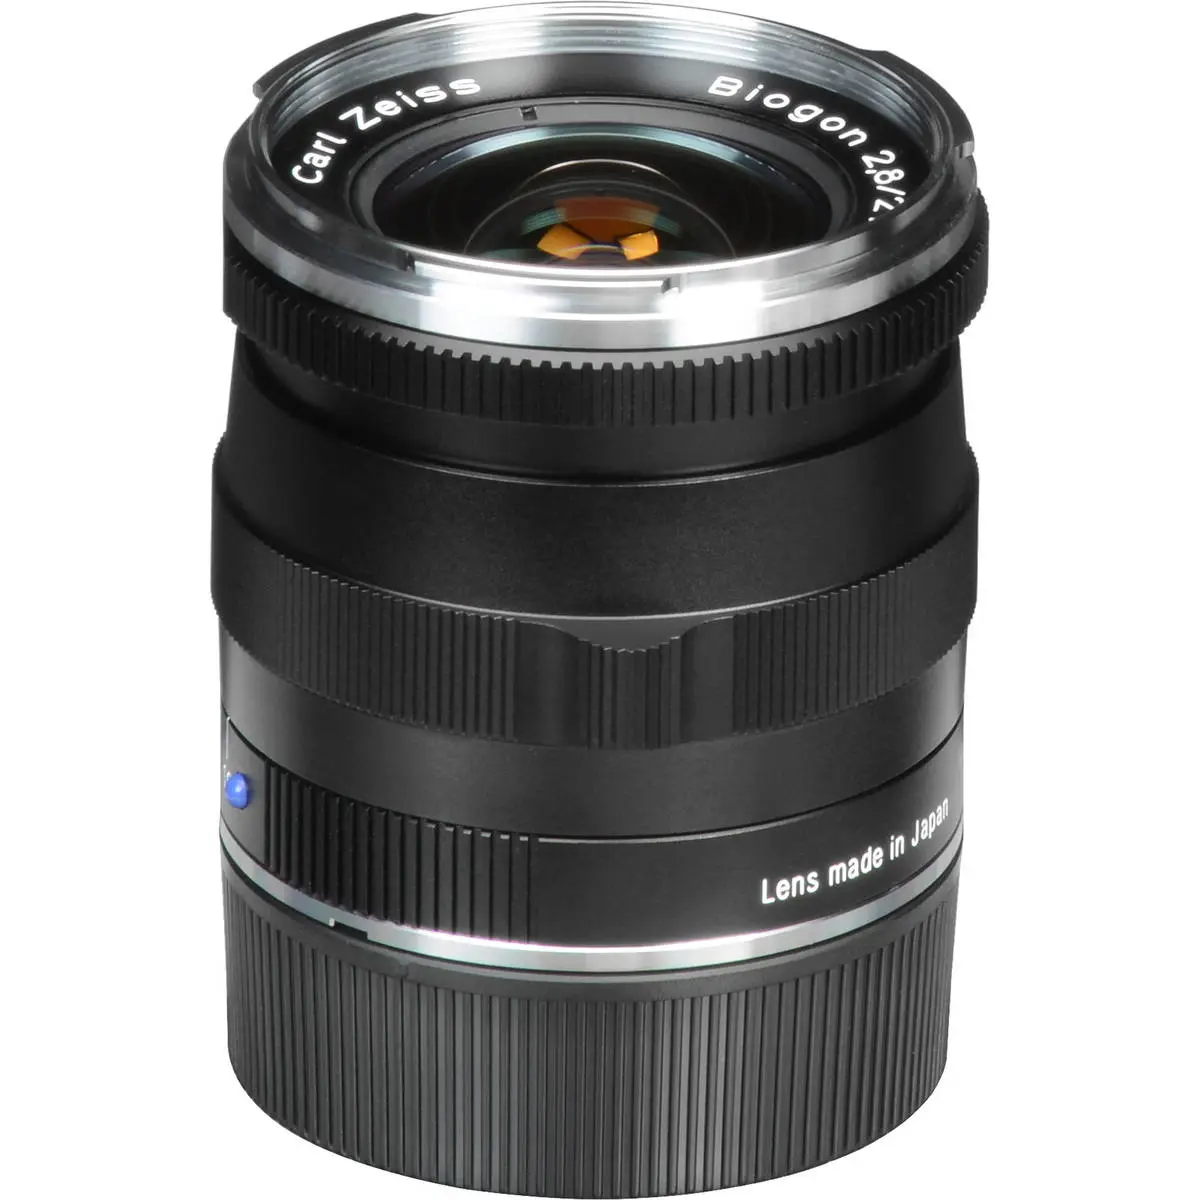 12. Carl Zeiss 21mm F/2.8 BIOGON T* ZM (Leica M) Black Lens